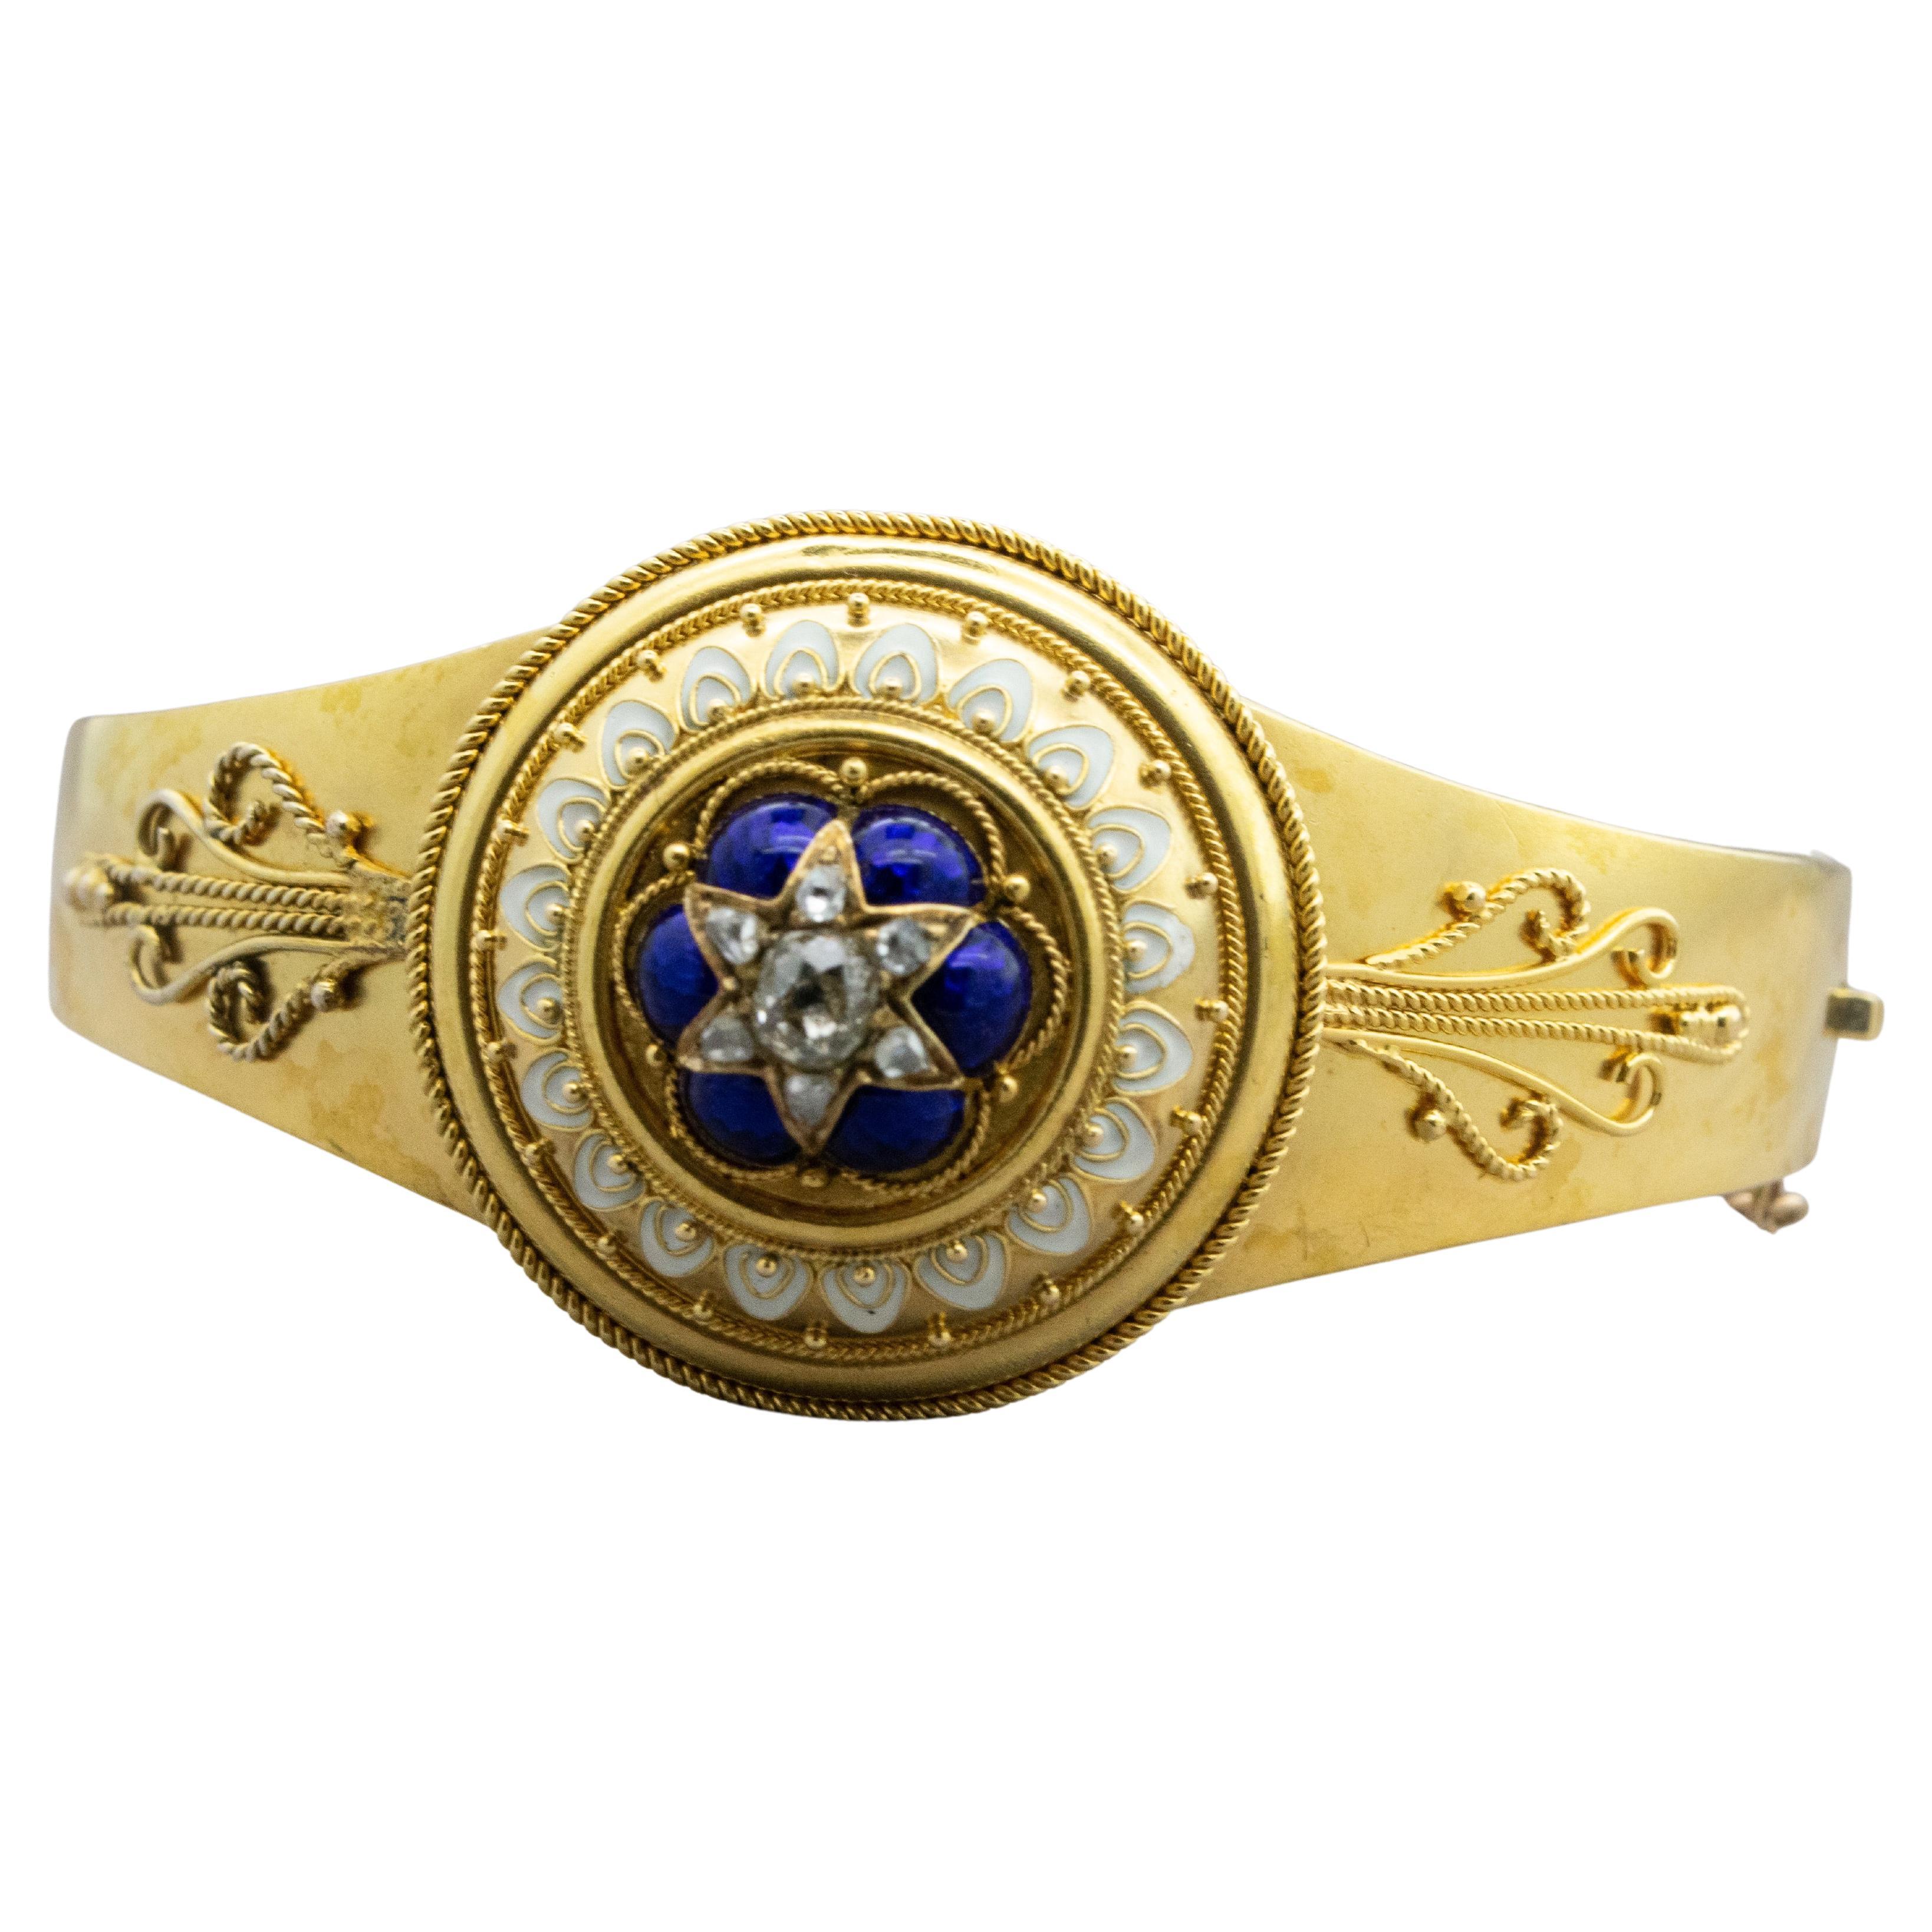 Armband La Belle Époque, Etruskische Wiedergeburt, Gold, Diamanten, Emaille, Filigran